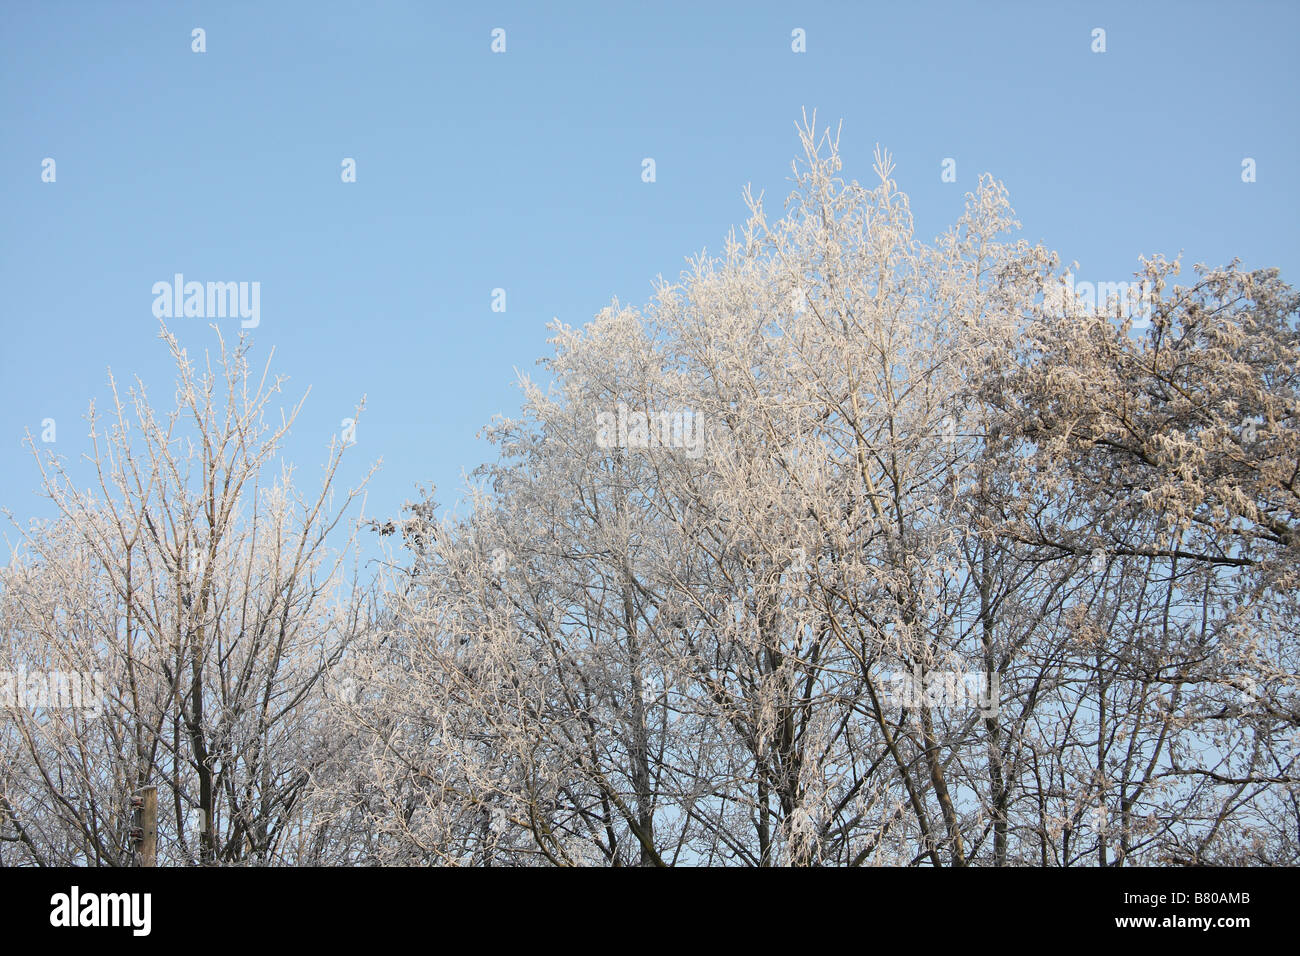 Les arbres givrés tôt dans la journée avec le ciel bleu, la beauté dans une scène d'hiver avec des arbres blancs dus au gel. Banque D'Images